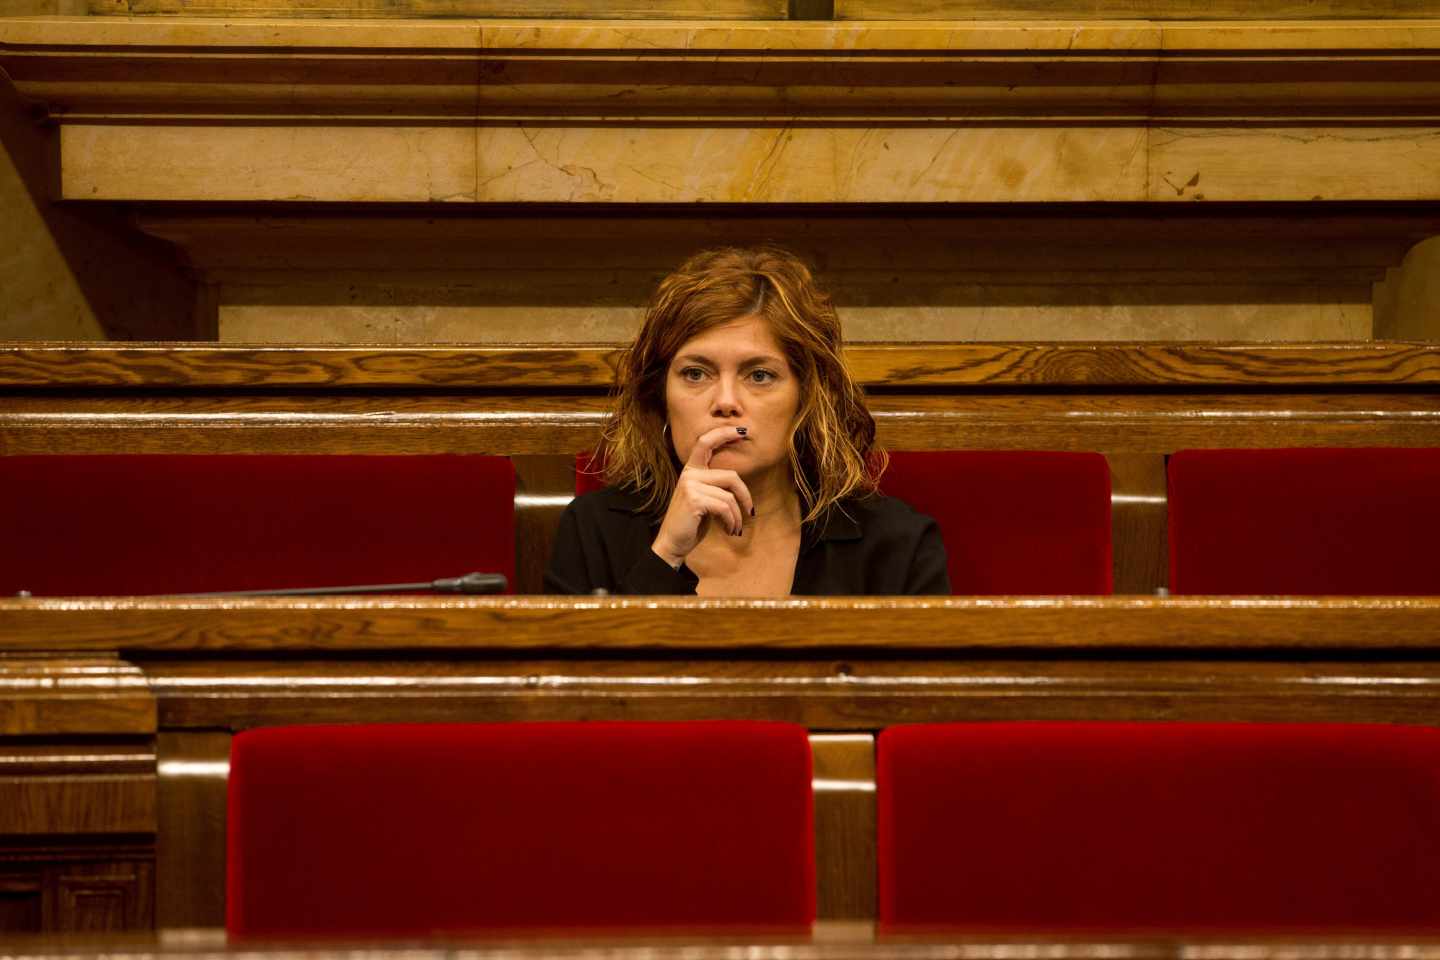 La ex portavoz Catalunya en Comú Podem, Elisenda Alamany